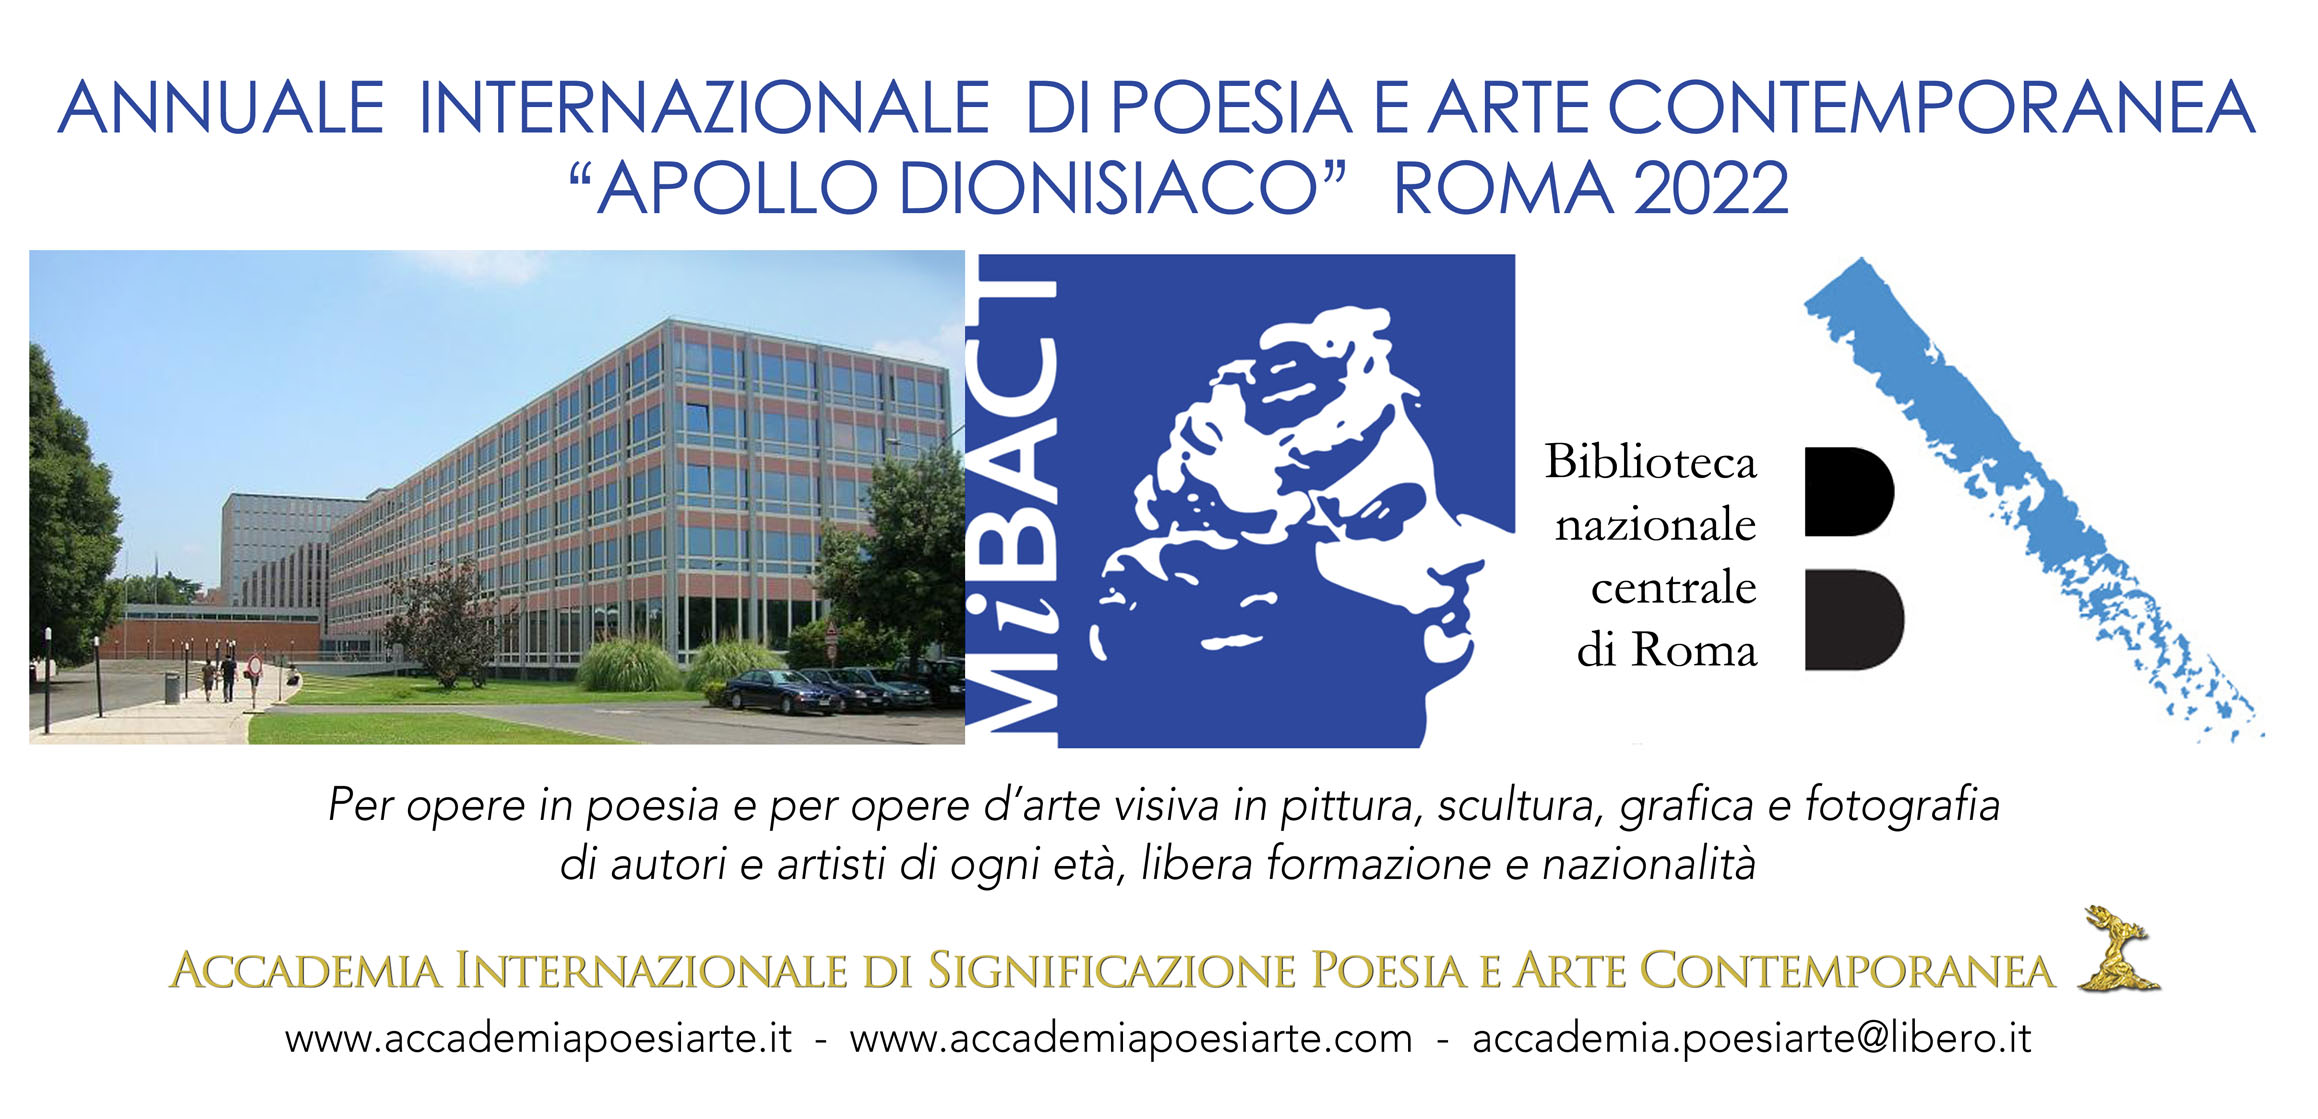 Premio Accademico Internazionale di Poesia e Arte Contemporanea Apollo dionisiaco a Roma IX Edizione 2022